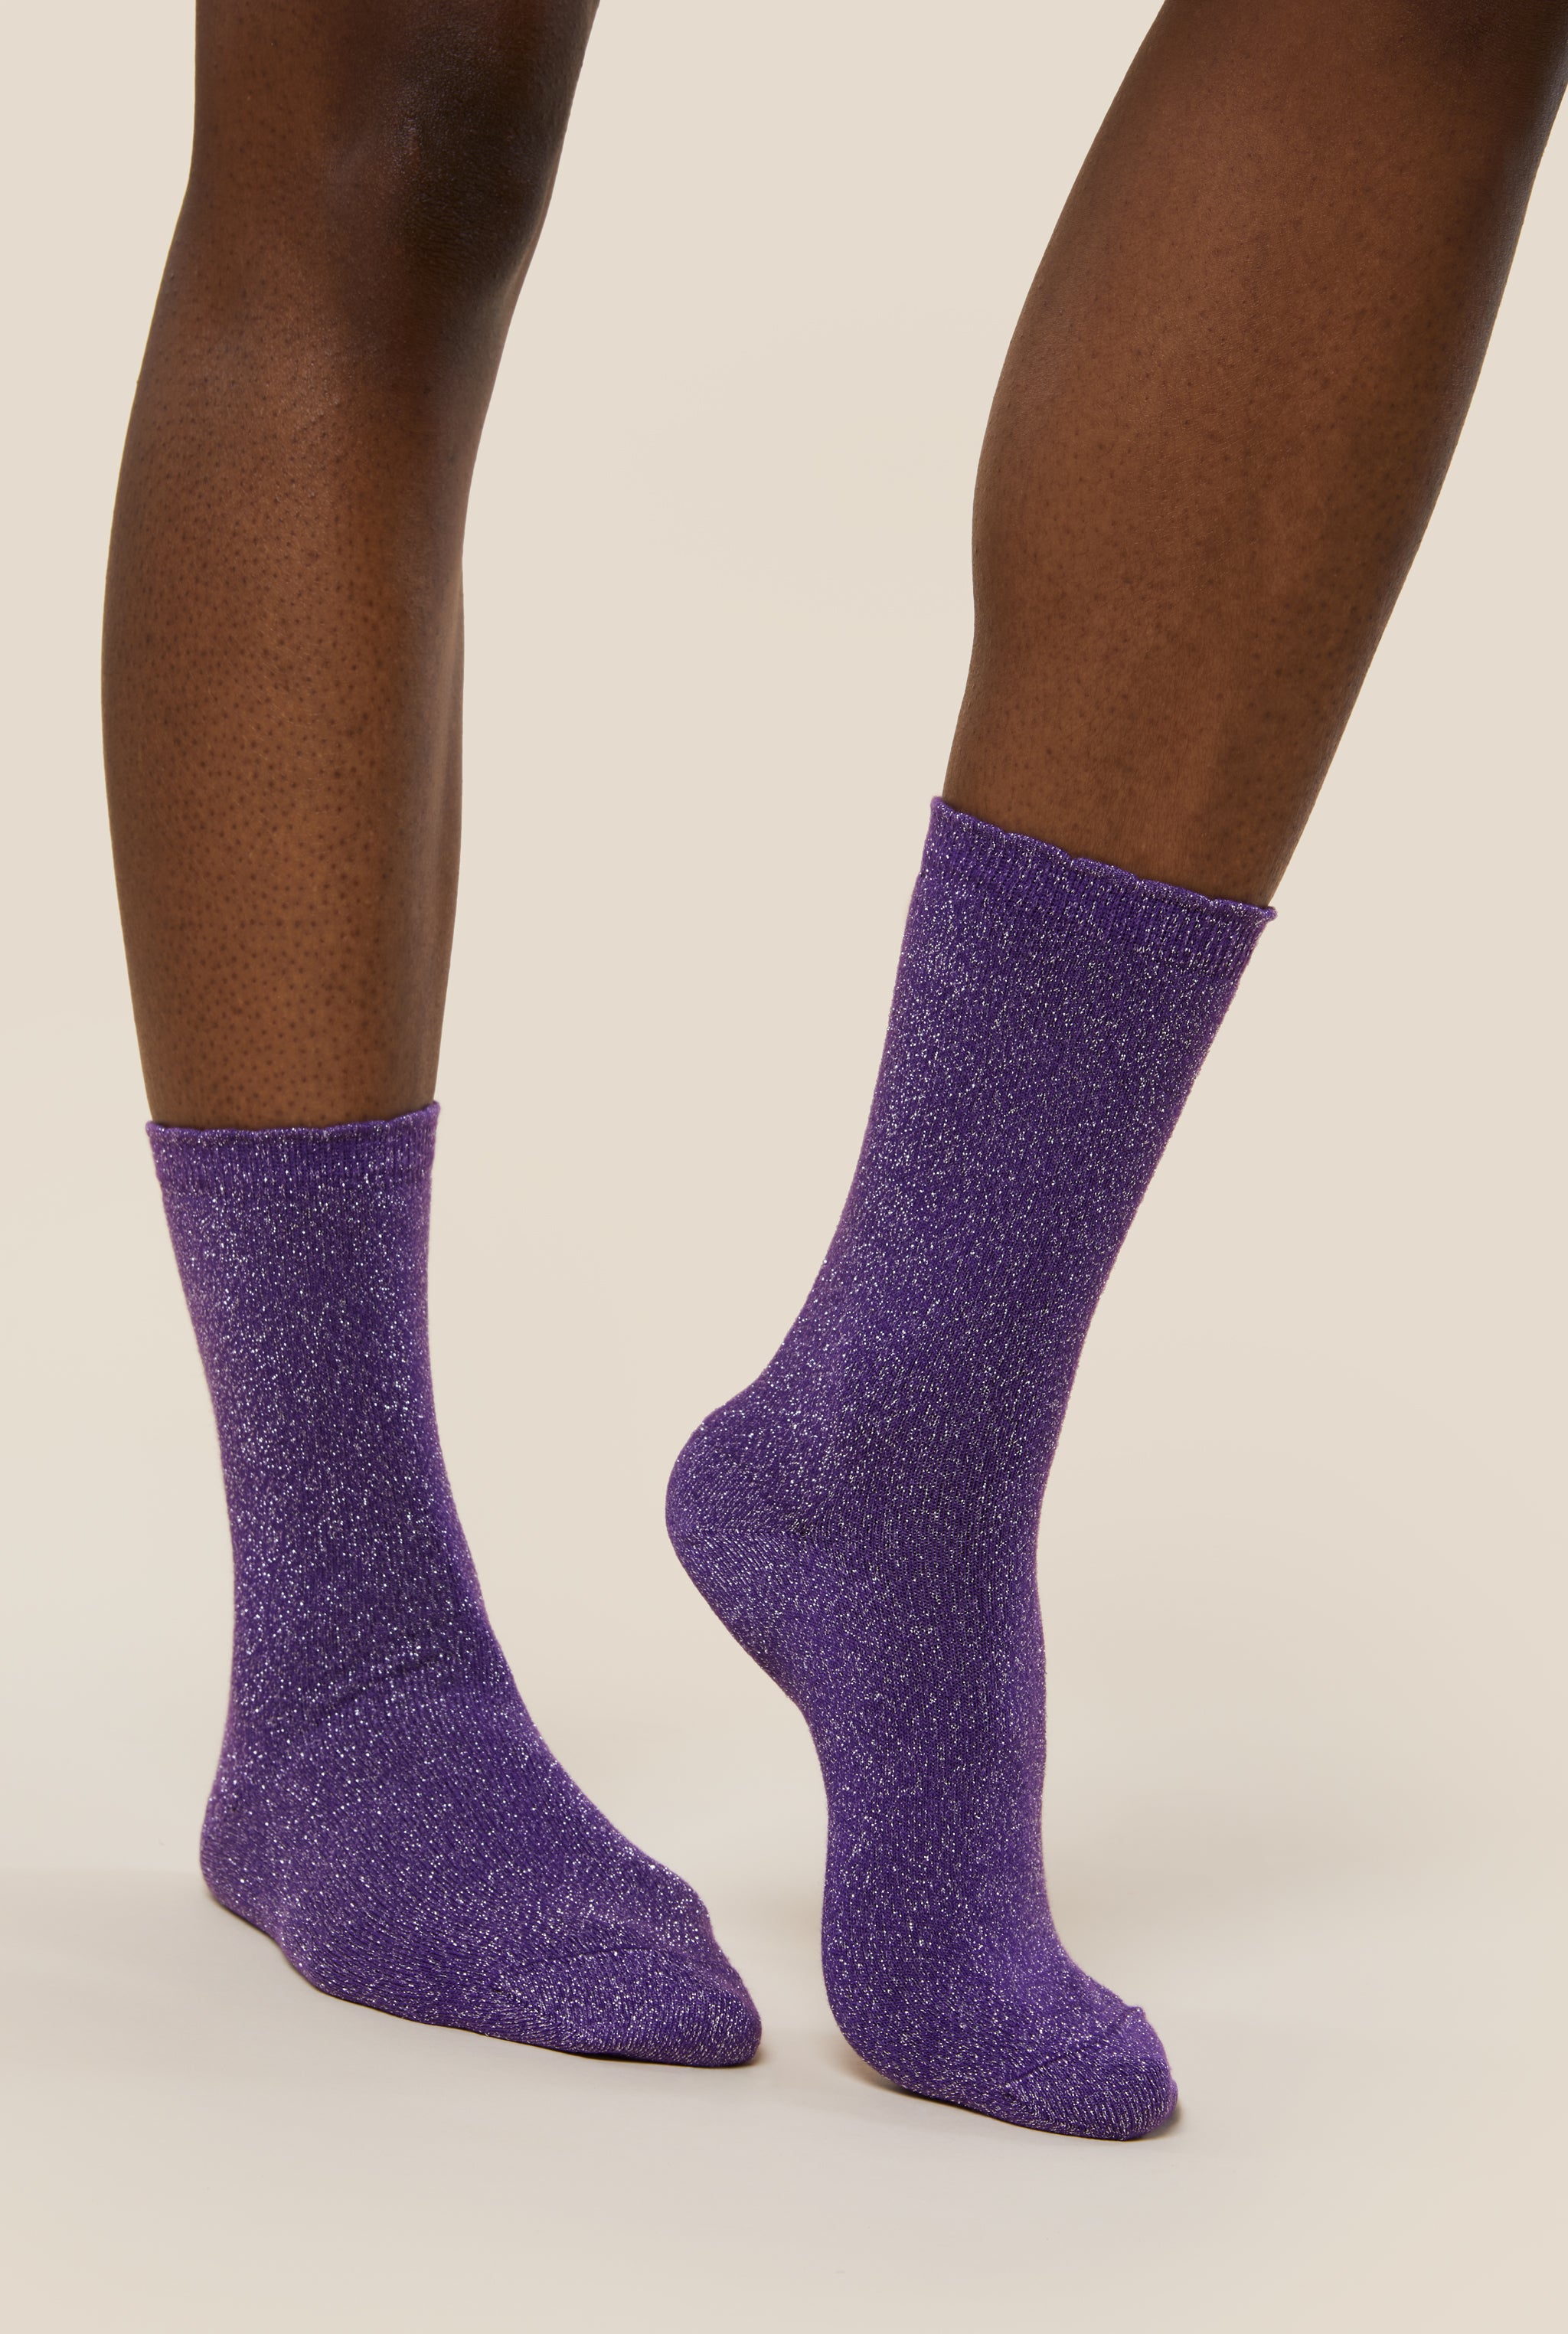 Chaussettes femme paillettes violettes Anti-poisse